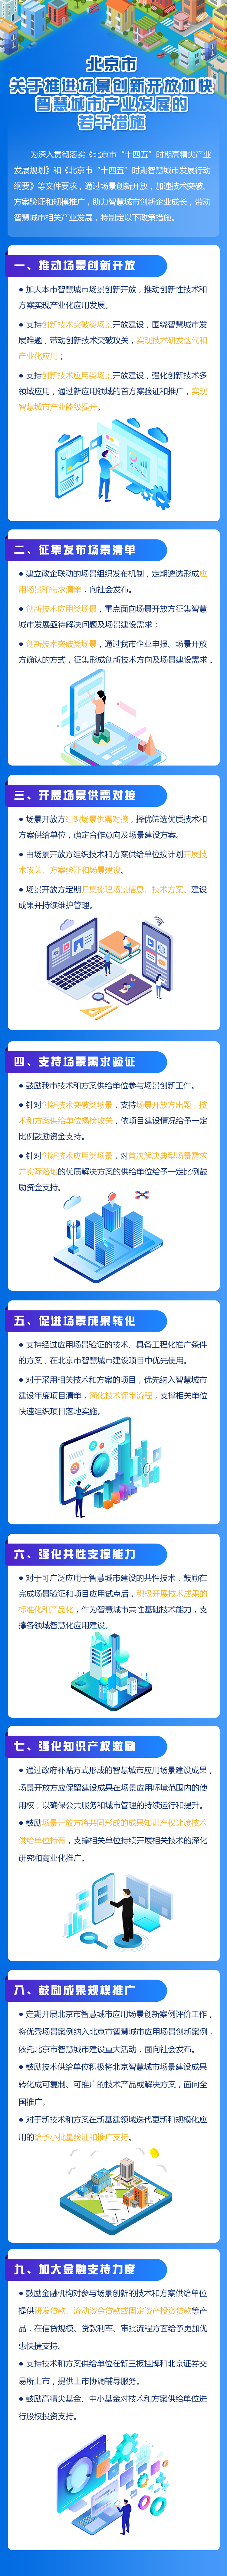 北京市关于推进场景创新开放加快智慧城市产业发展的若干措施.png